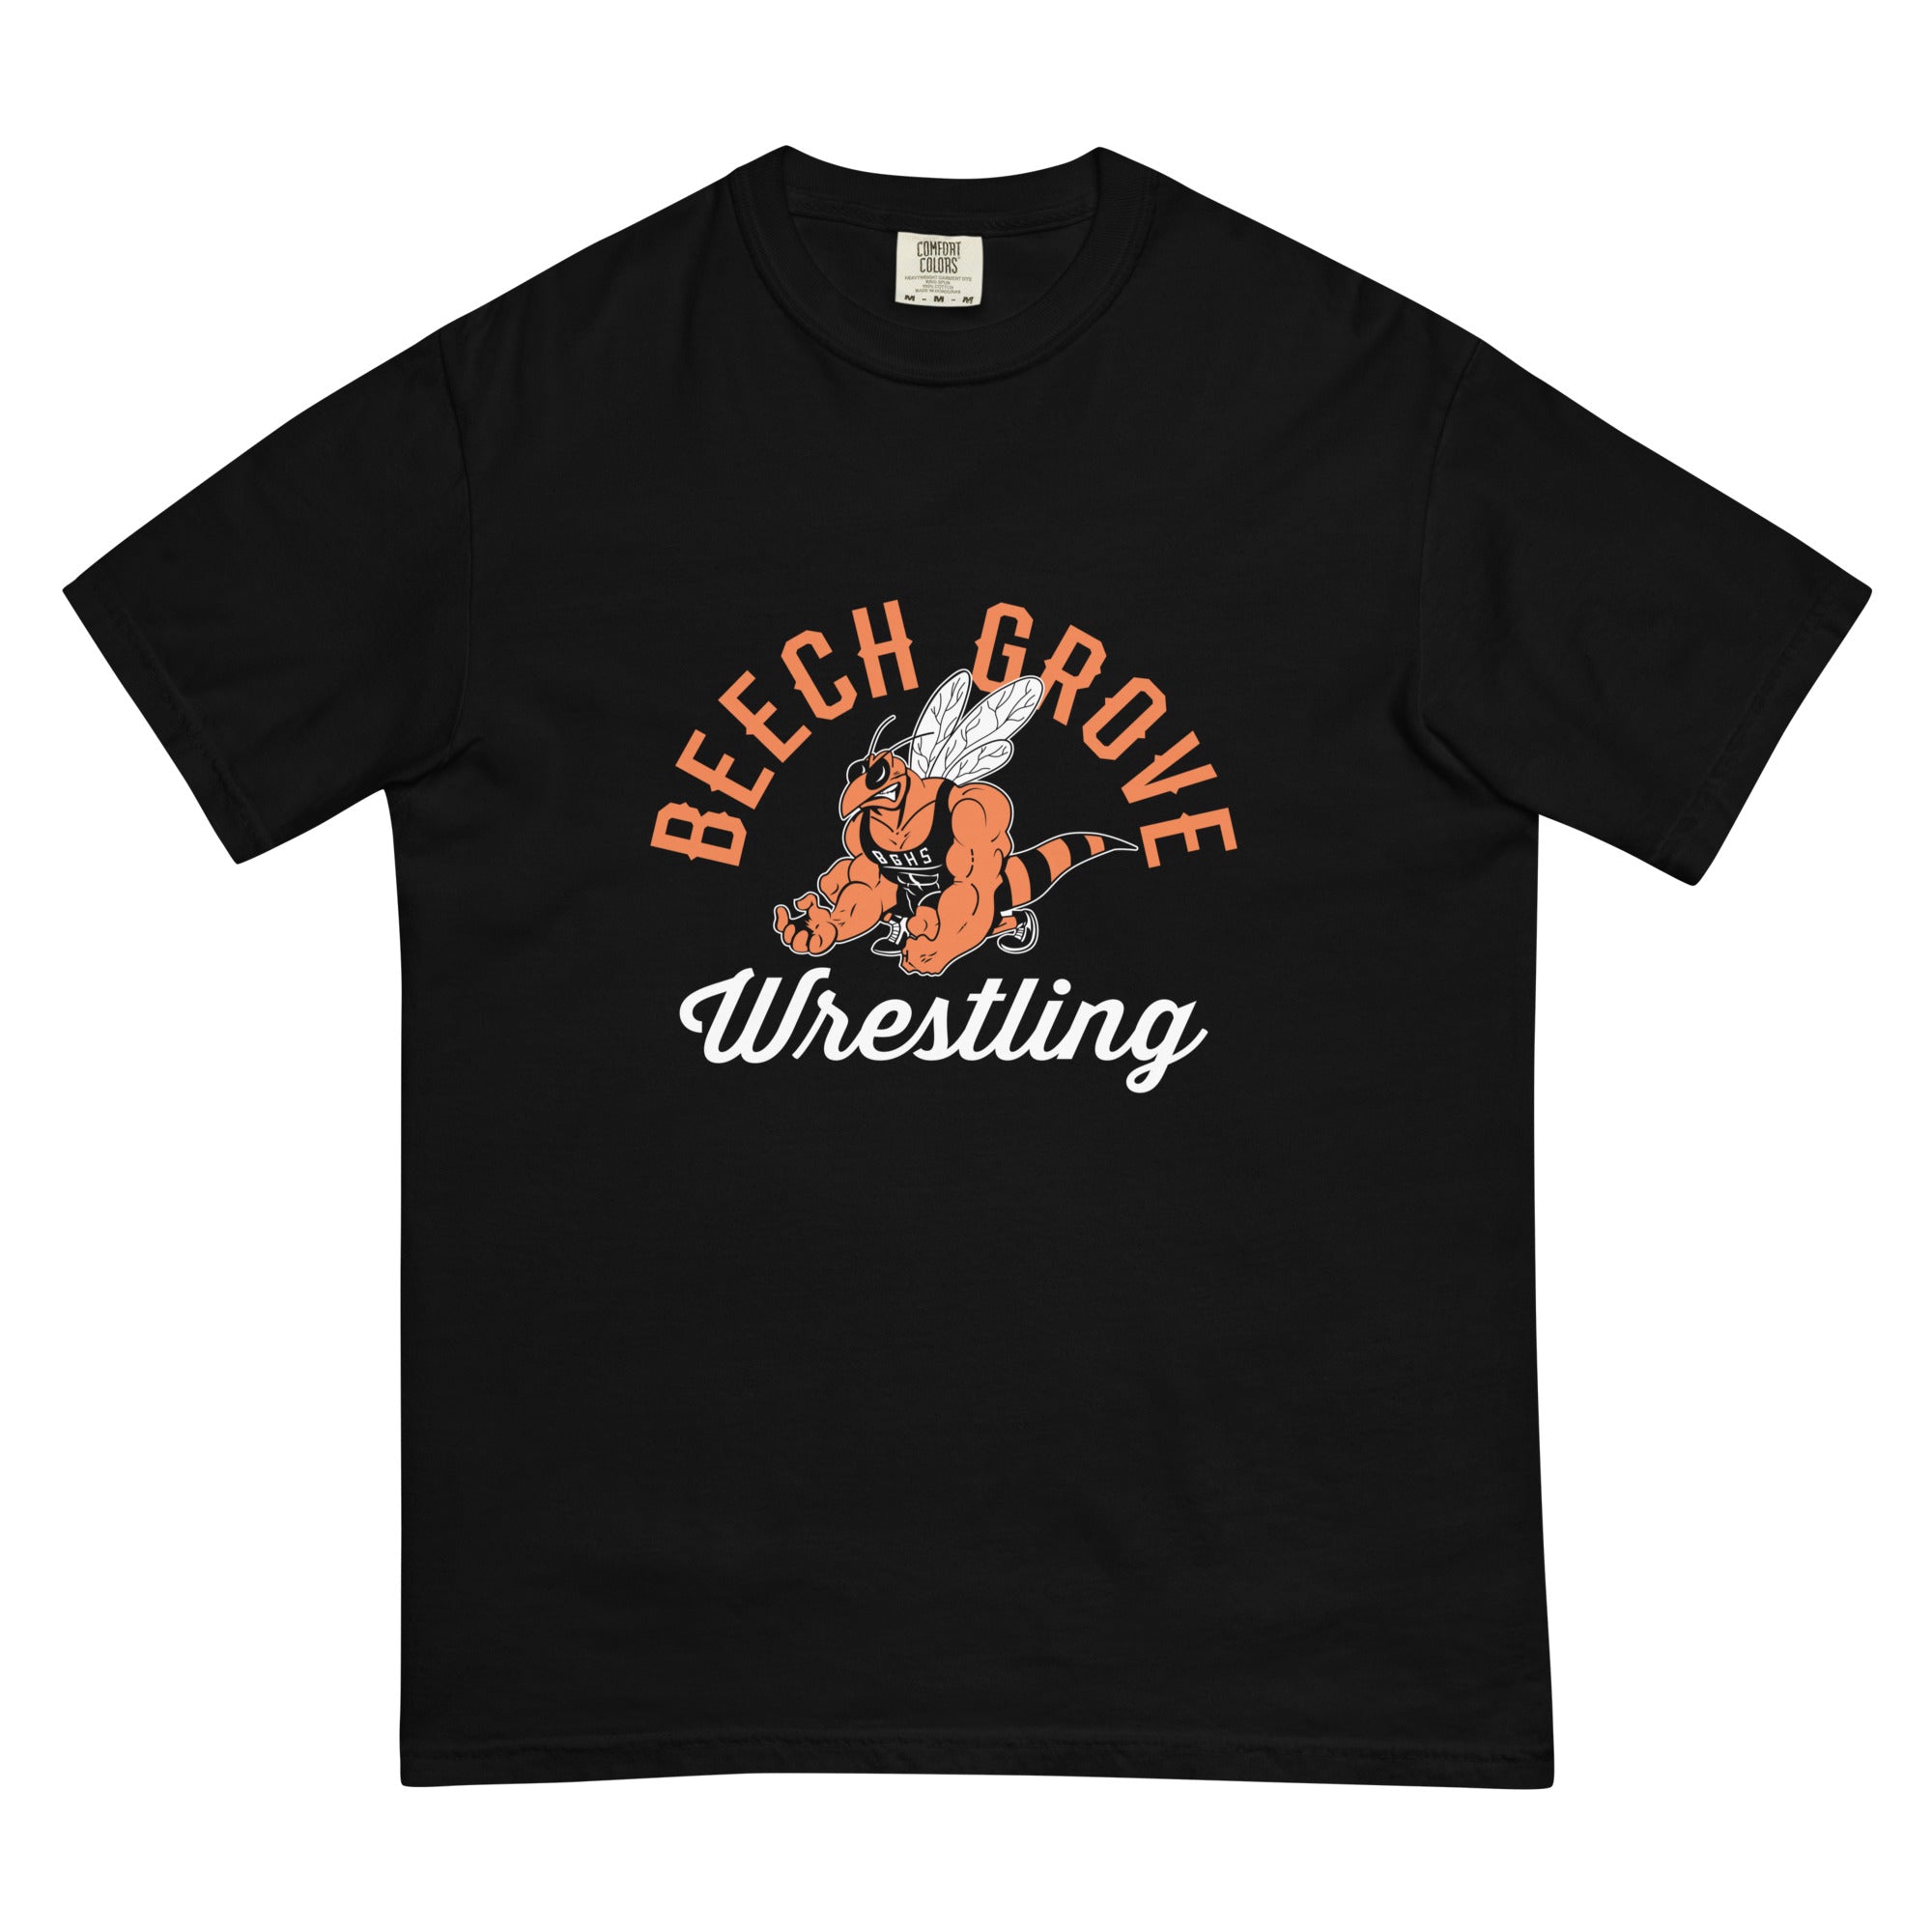 Beech Grove Wrestling Mens Garment-Dyed Heavyweight T-Shirt